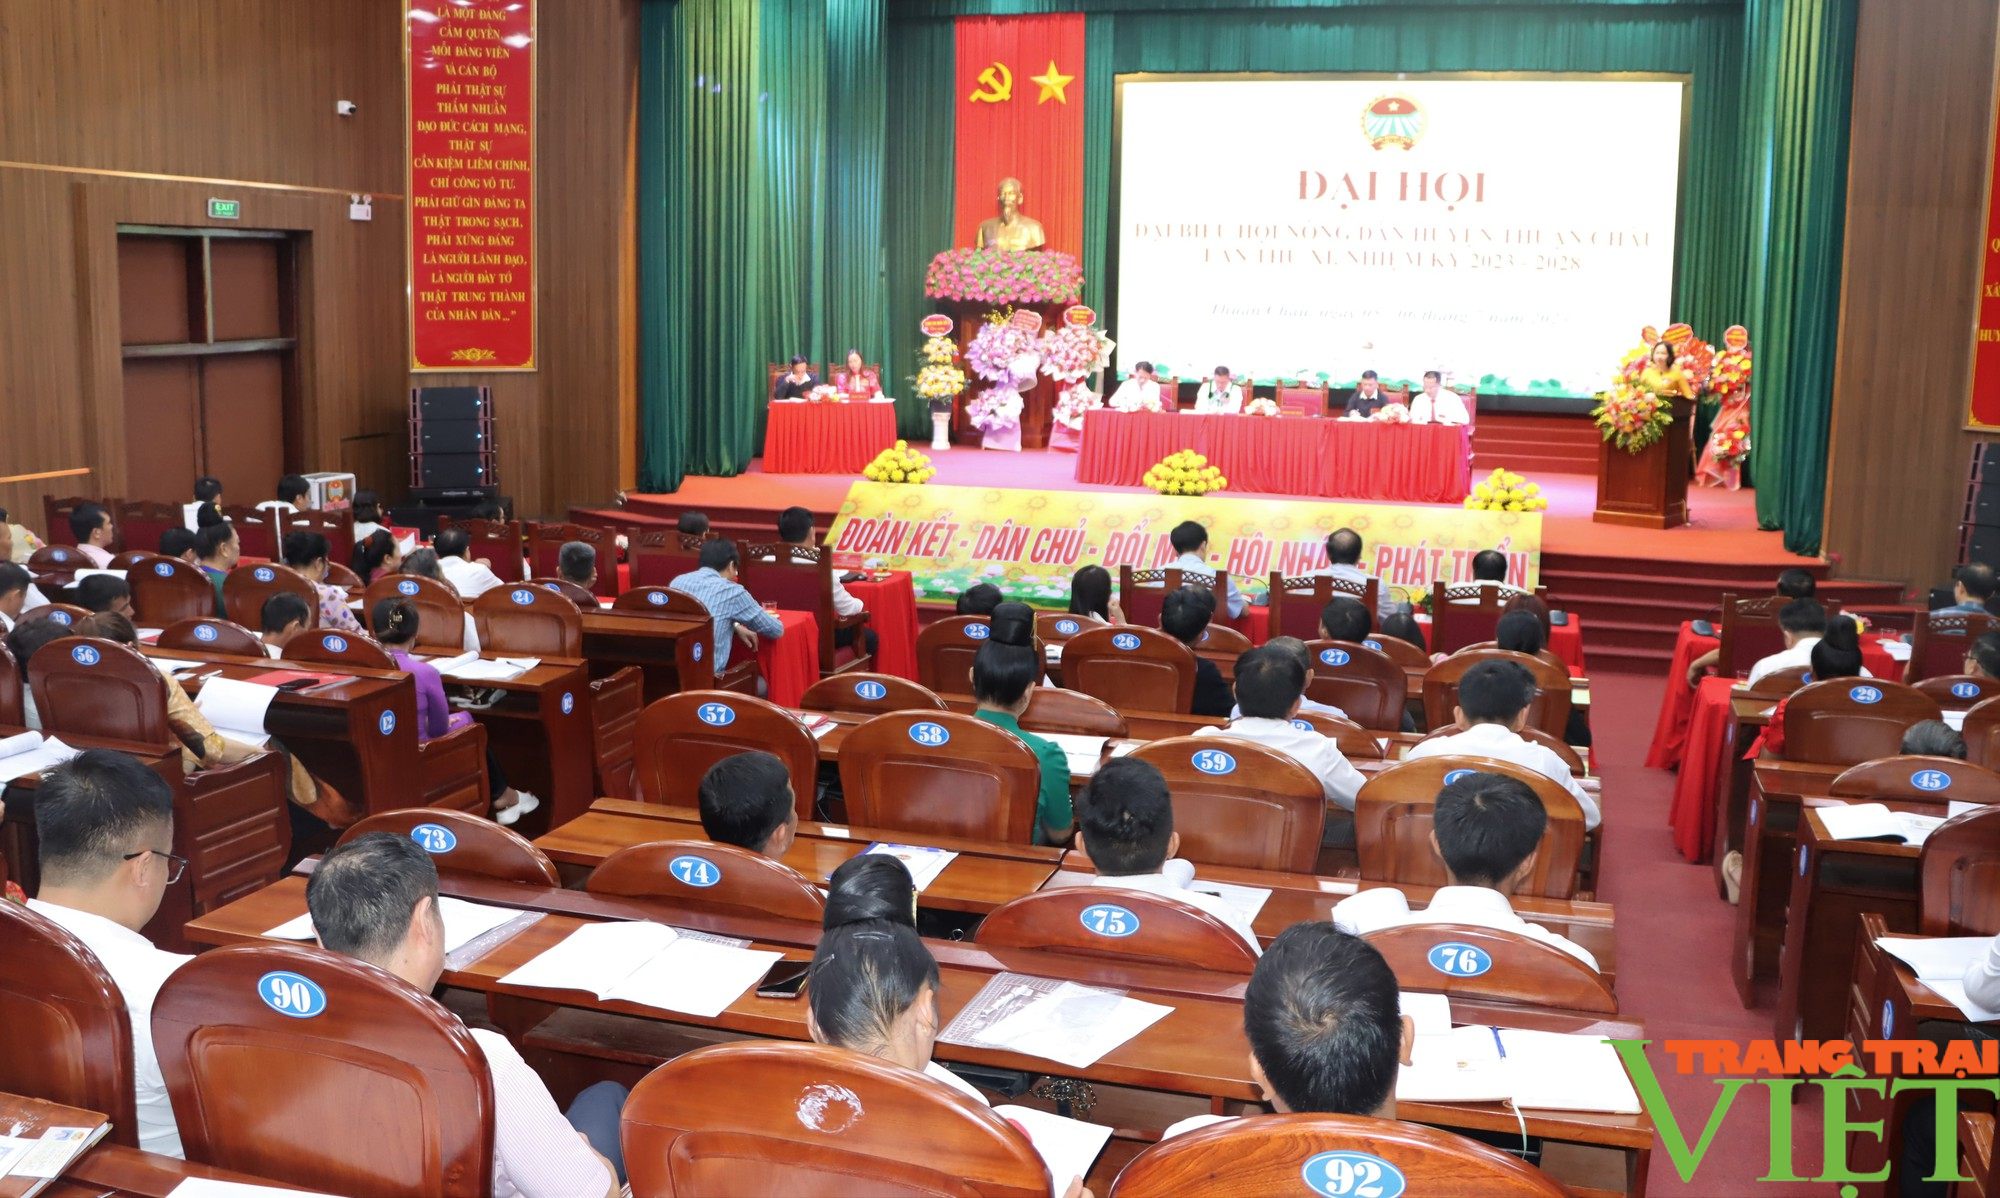 Bà Nguyễn Thúy Ngọc tái đắc cử Chủ tịch Hội Nông dân huyện Thuận Châu (Sơn La) - Ảnh 1.